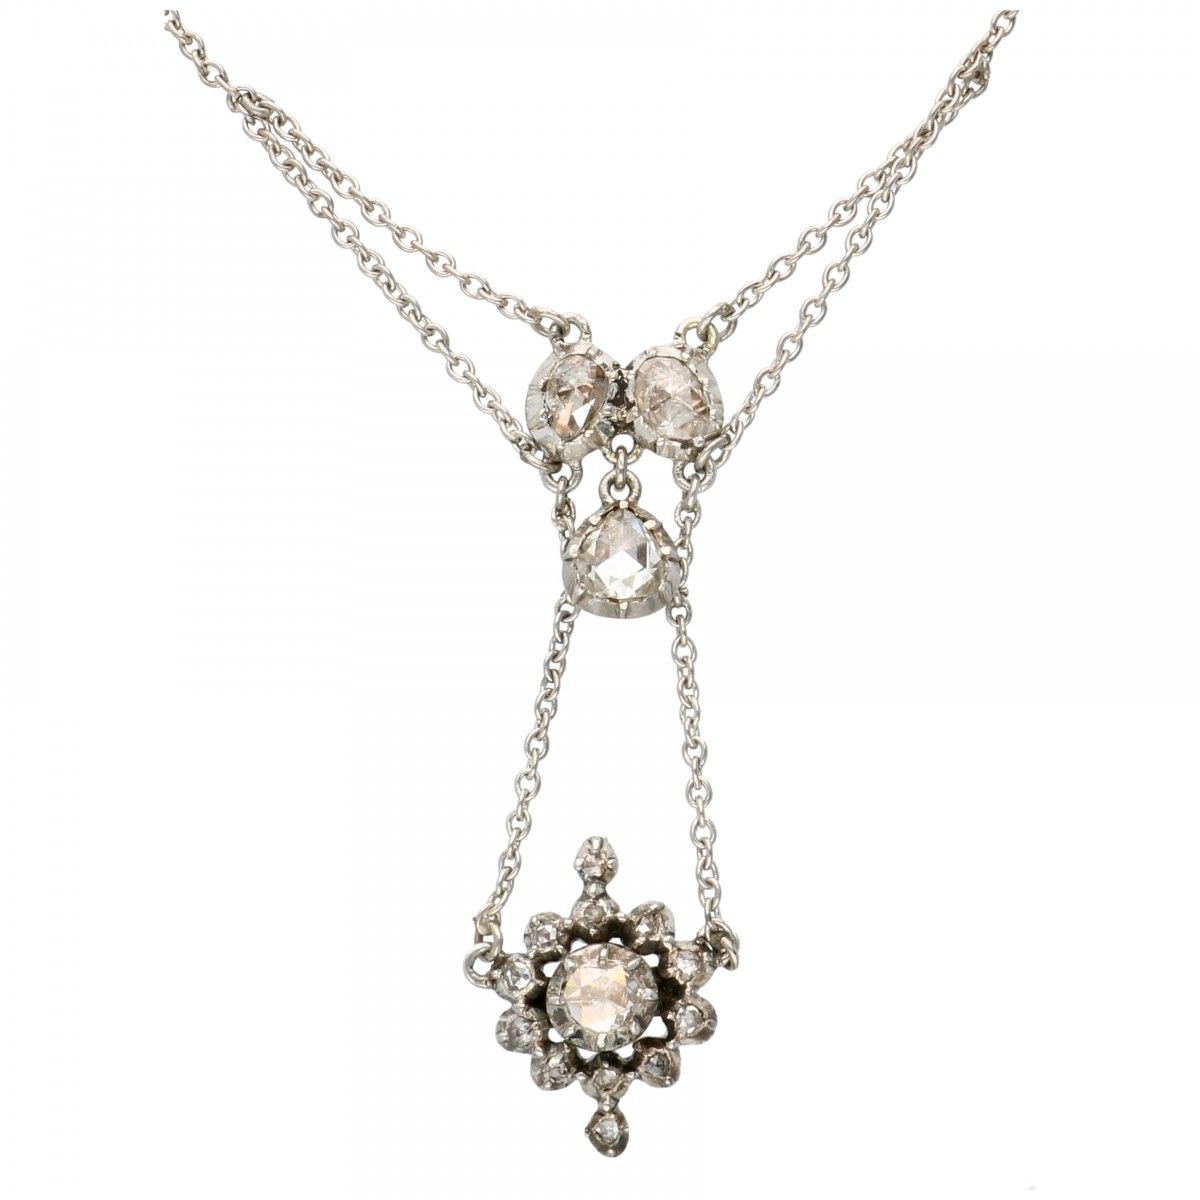 Antique silver necklace set with rose cut diamonds - 925/1000. Avec un clip de s&hellip;